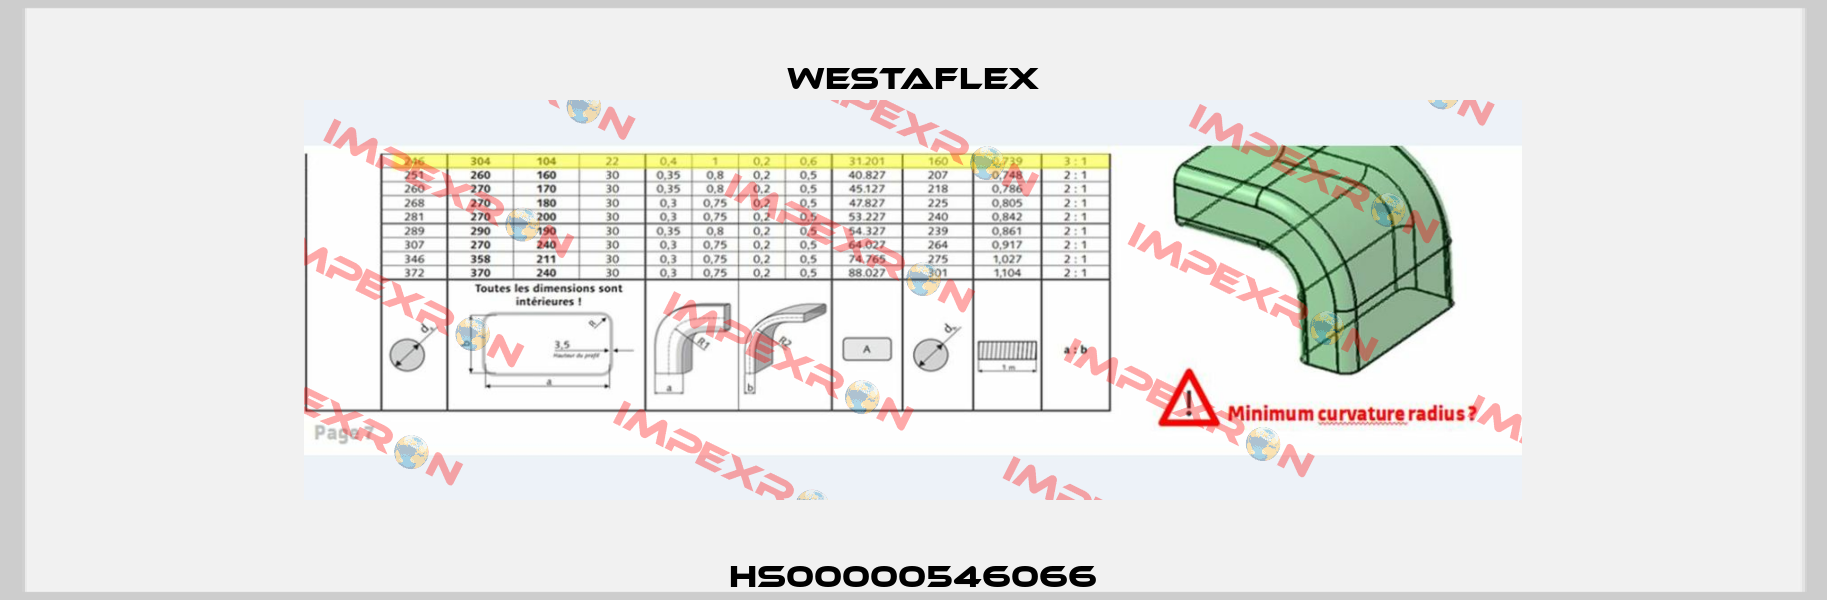 HS00000546066 Westaflex